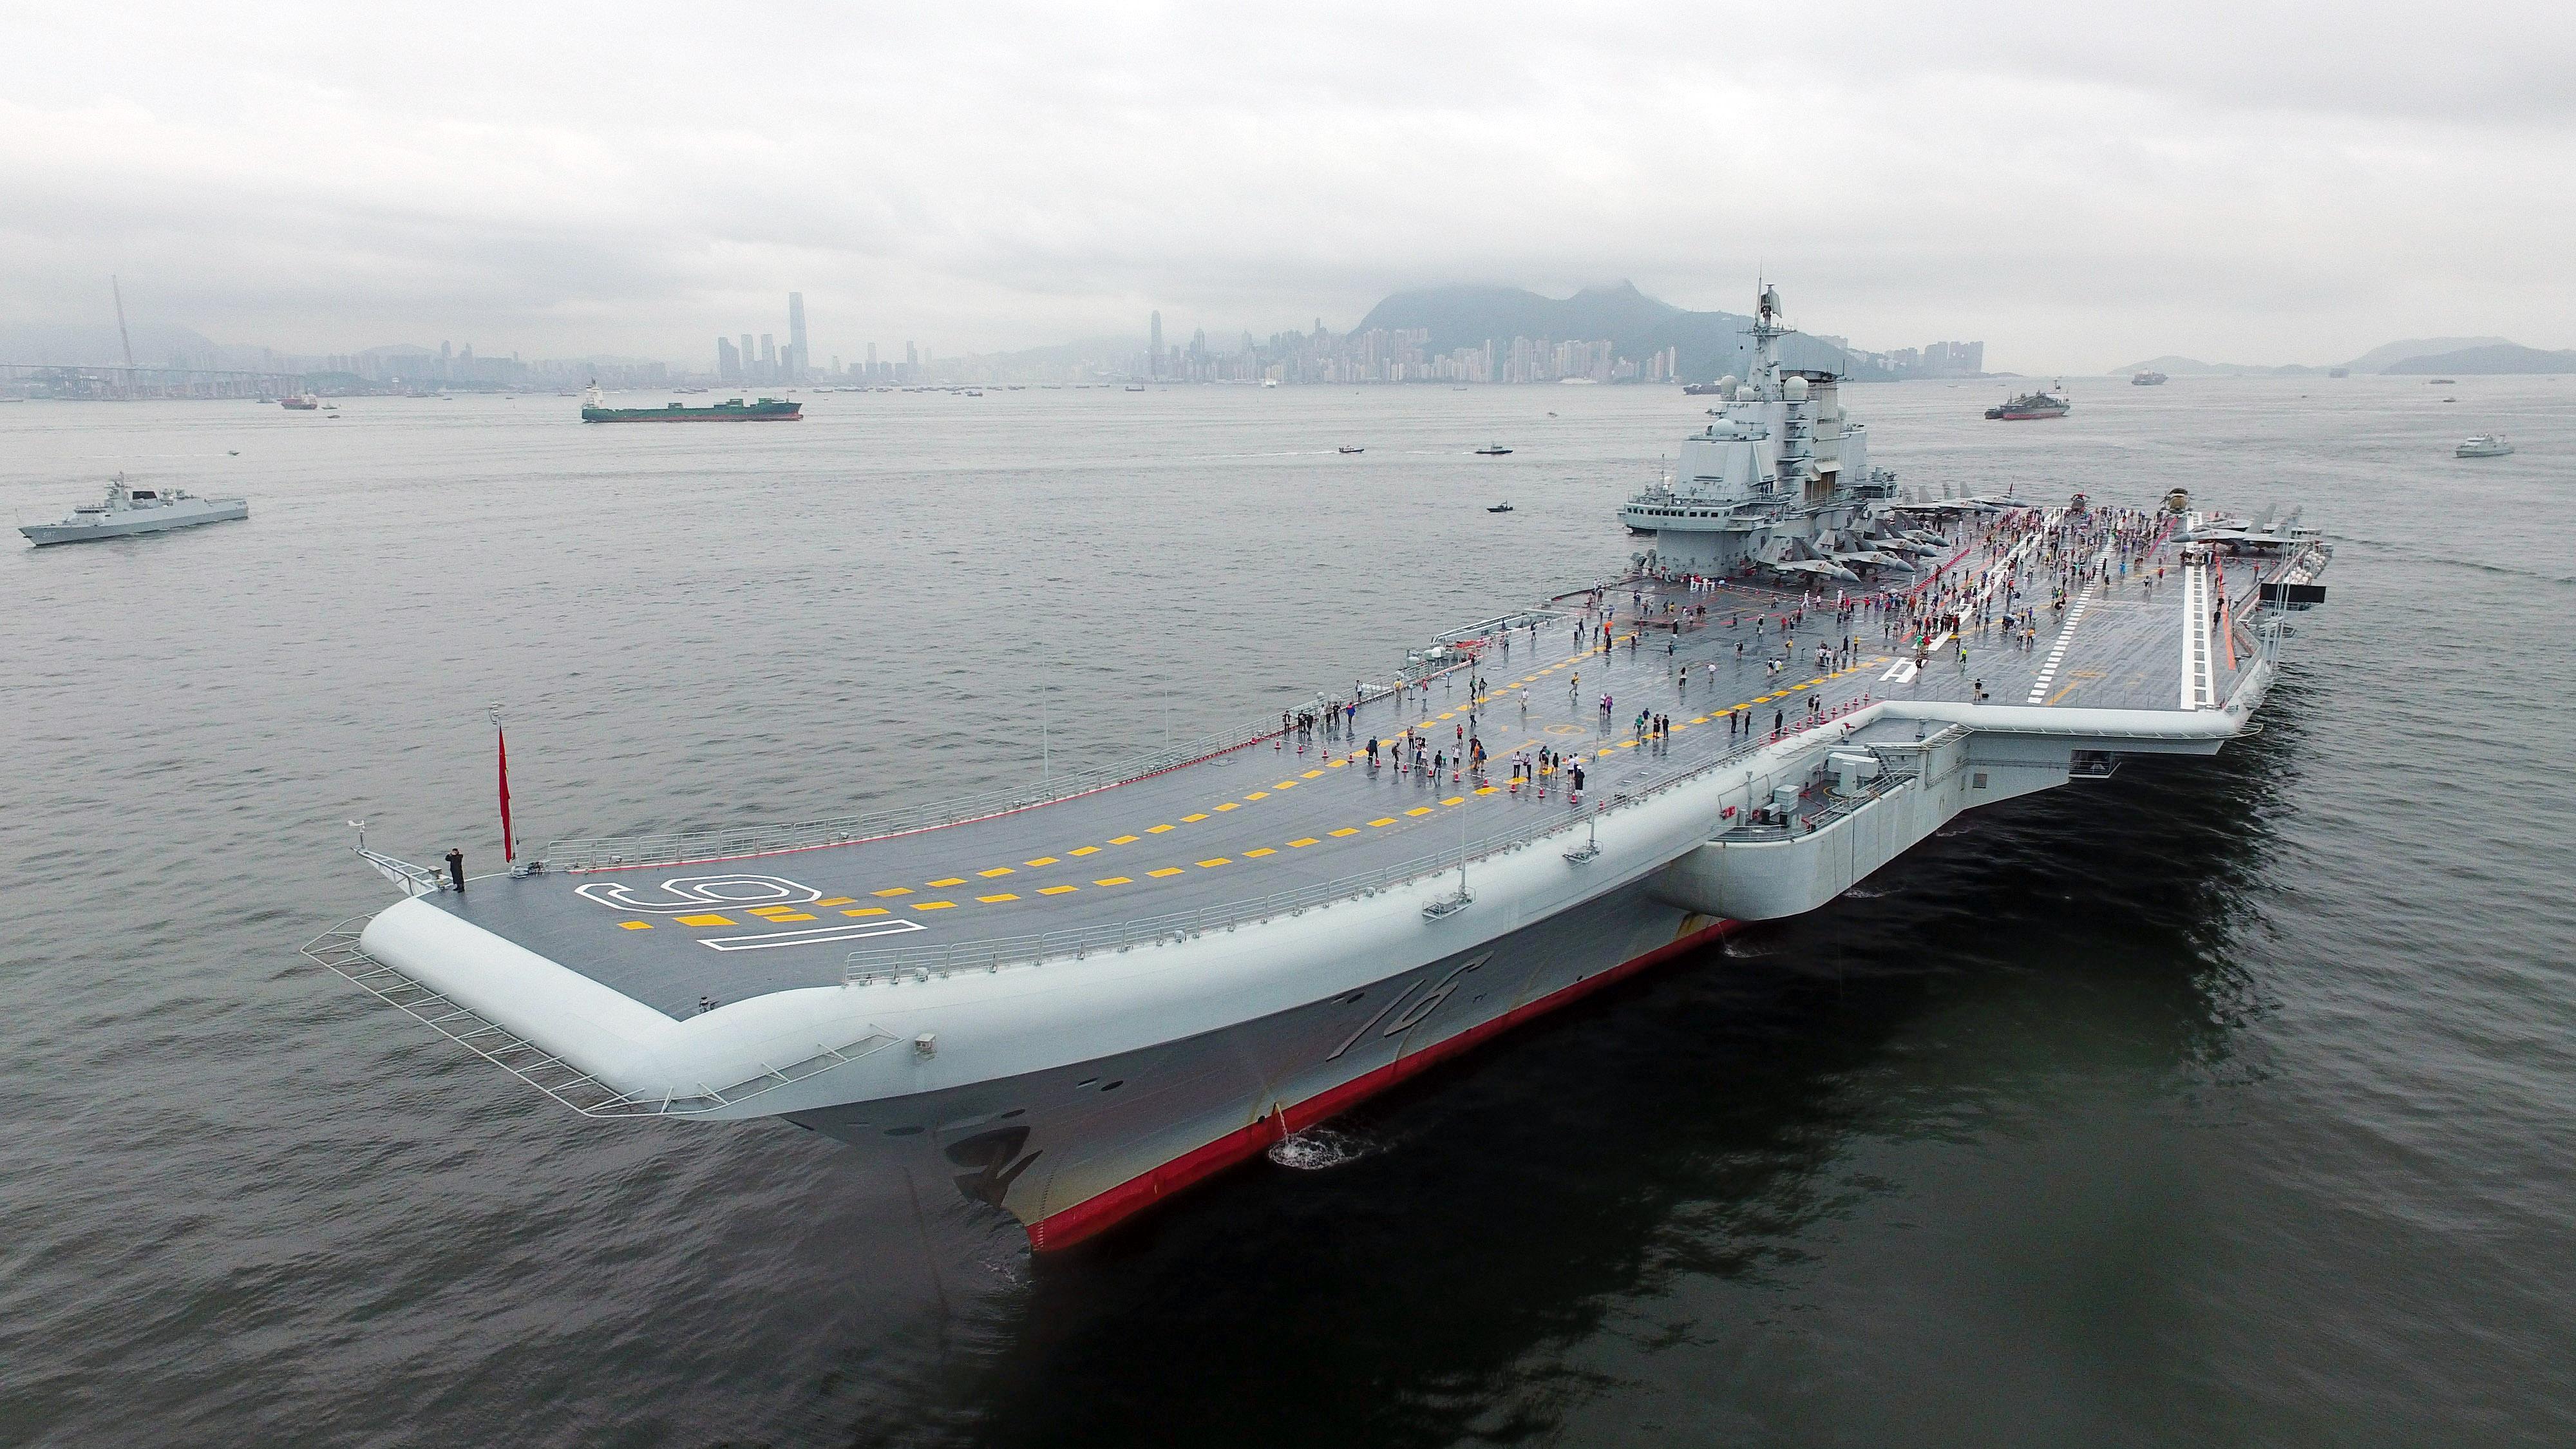 美媒质疑中国能否打造大型航母?专家这回给出定心丸